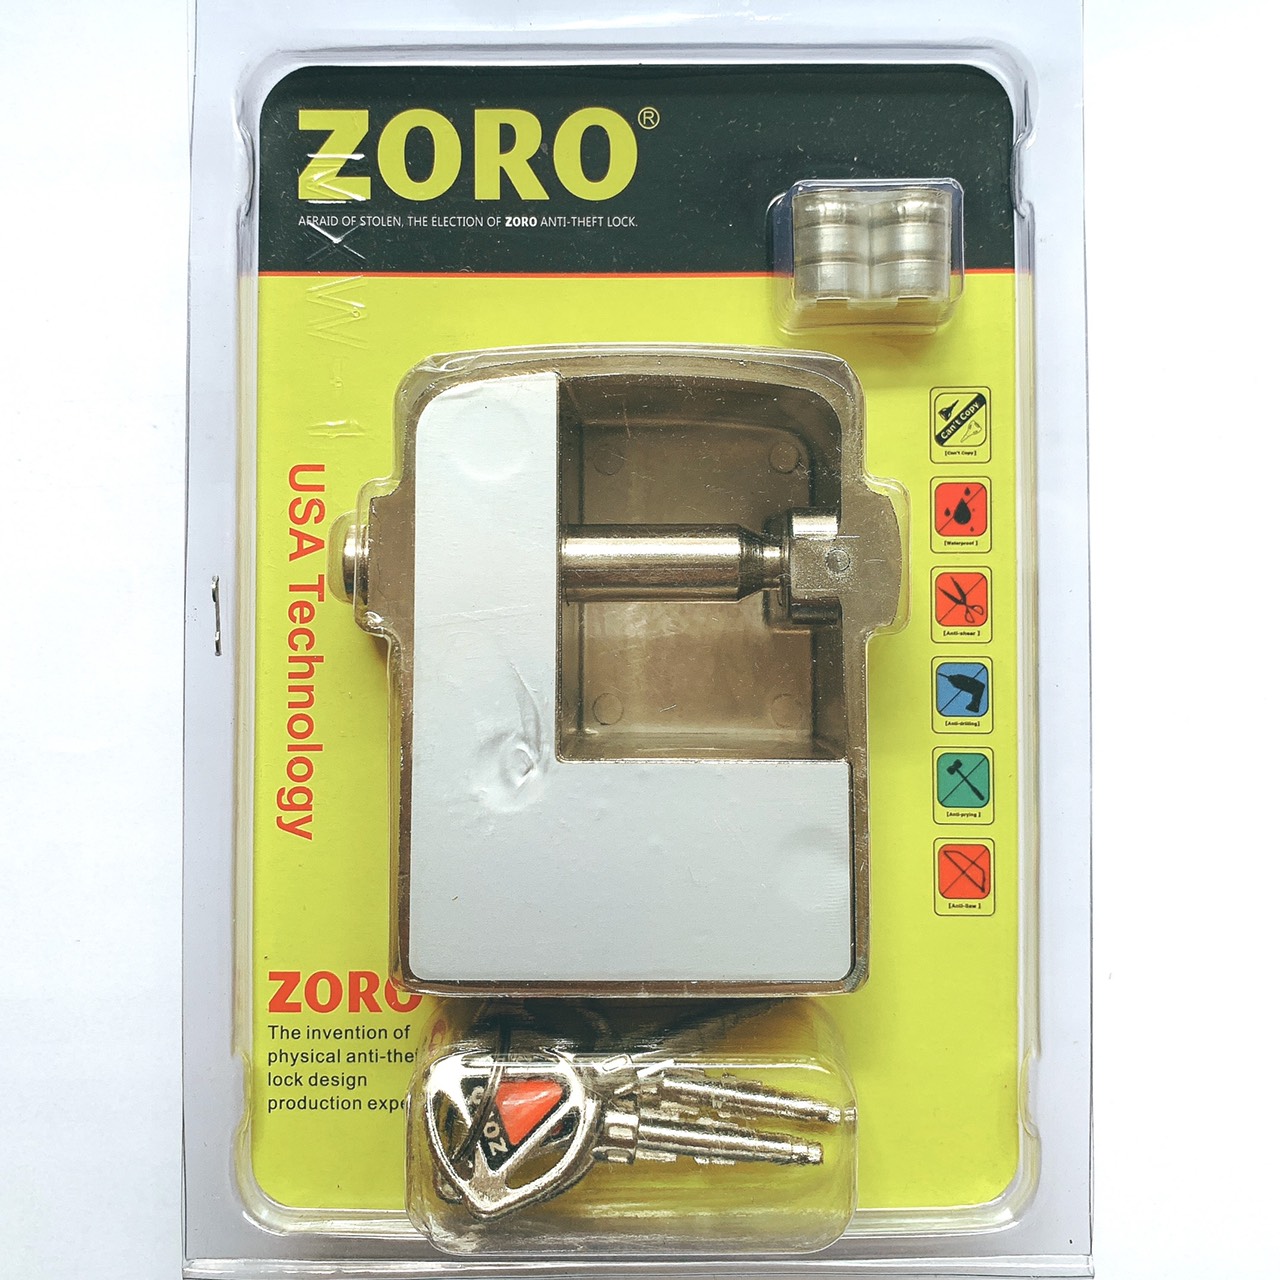 Ổ khóa chụp bát cửa báo động chống trộm ZORO thông minh - màu trắng bạc - khóa chụp chống cắt toàn diện, chống cắt khoen cửa - hàng chính hãng